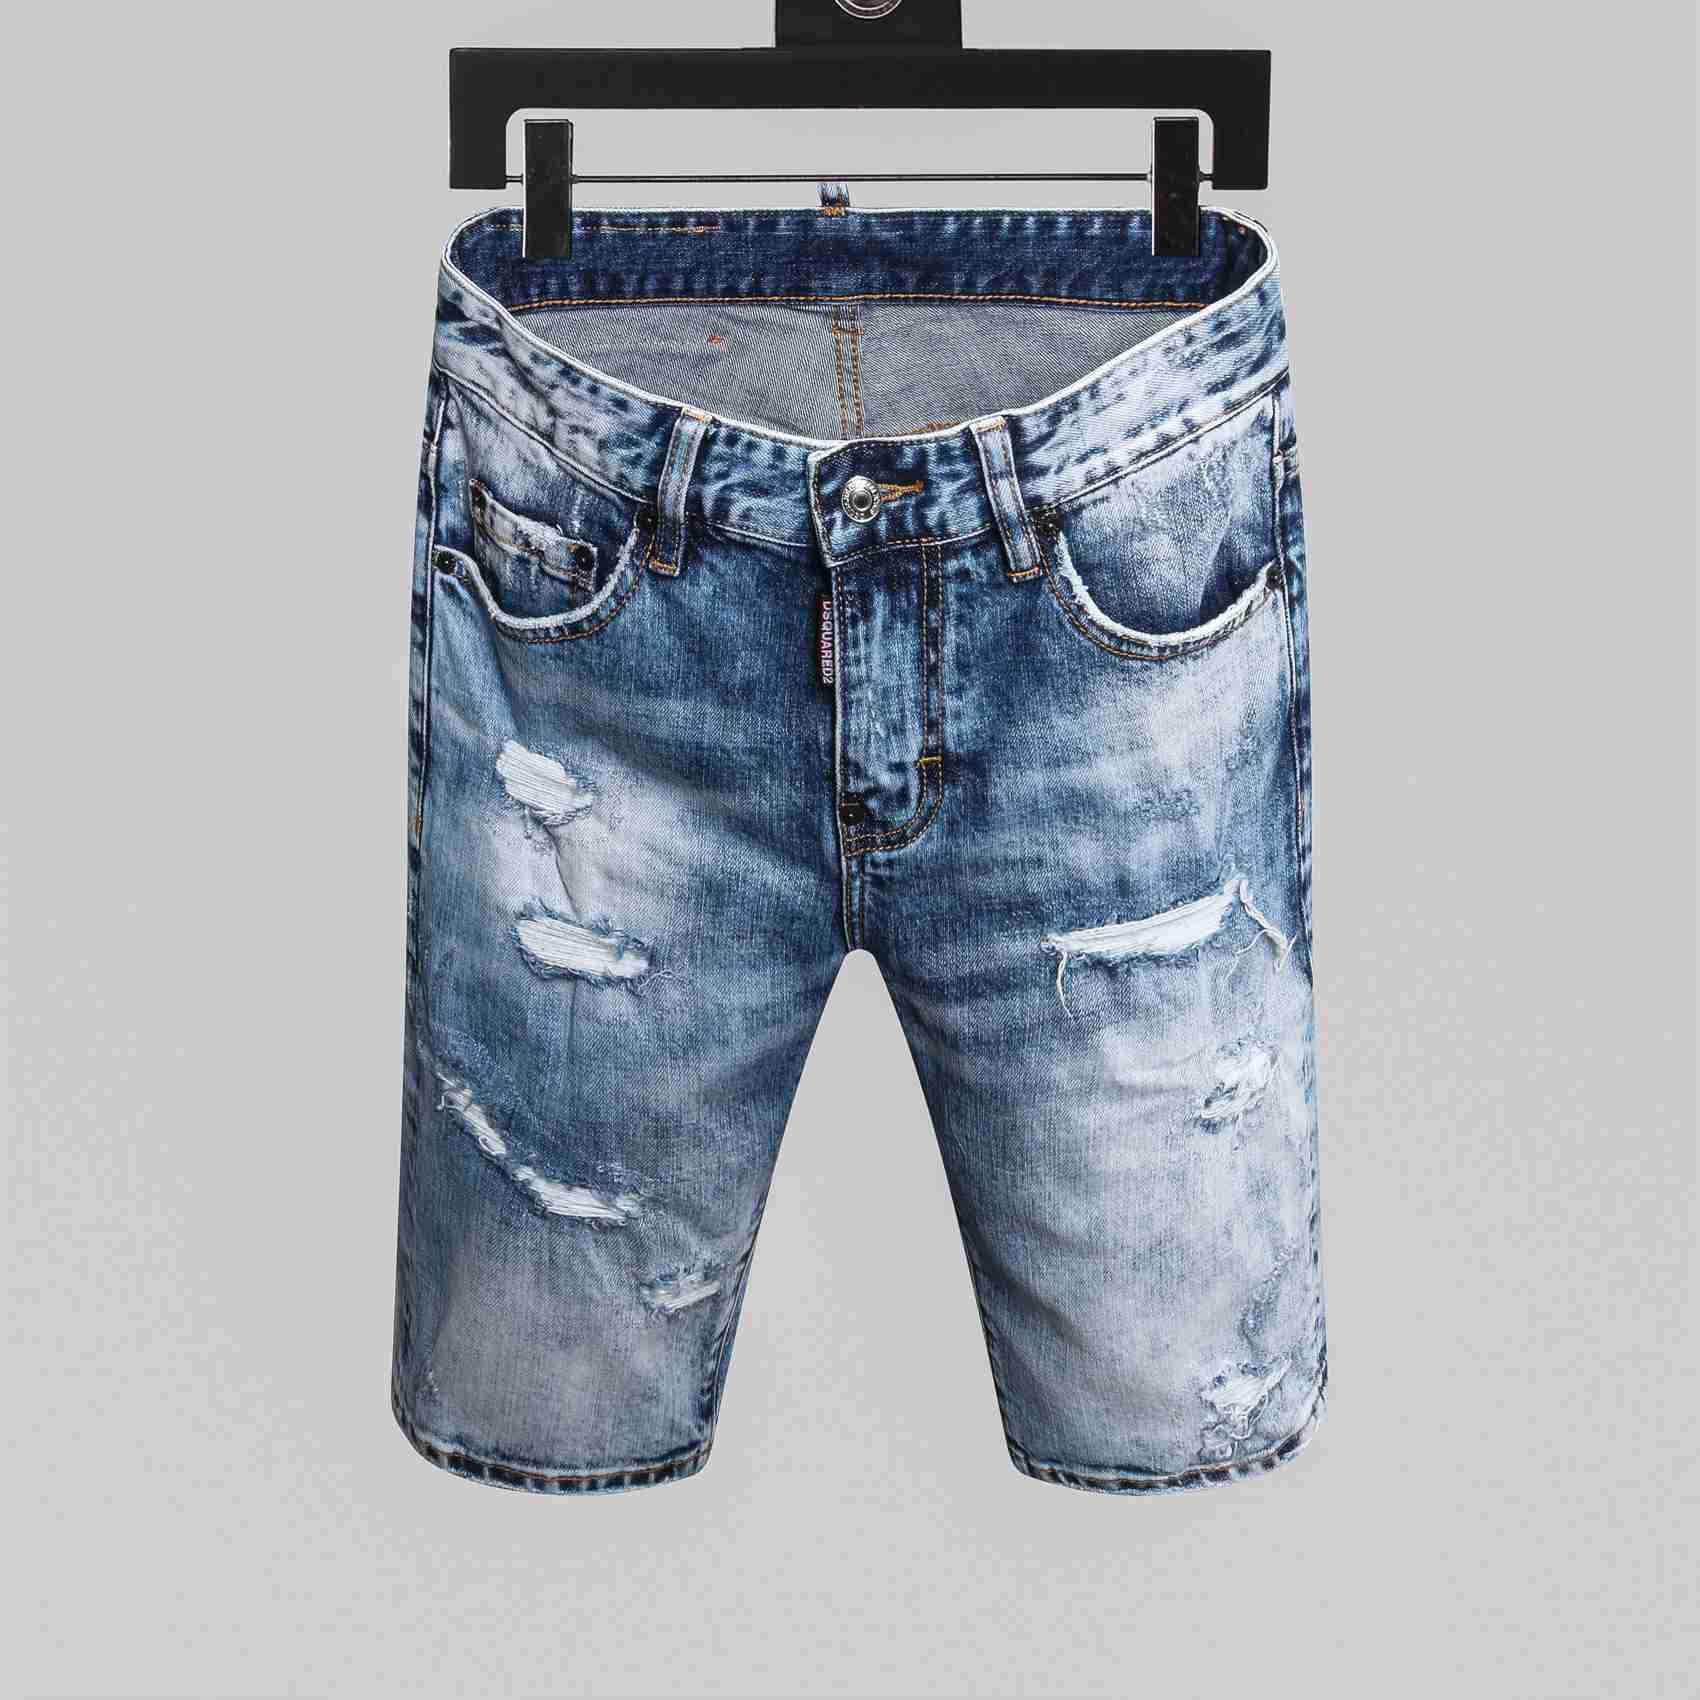 mens designer jeans shorts